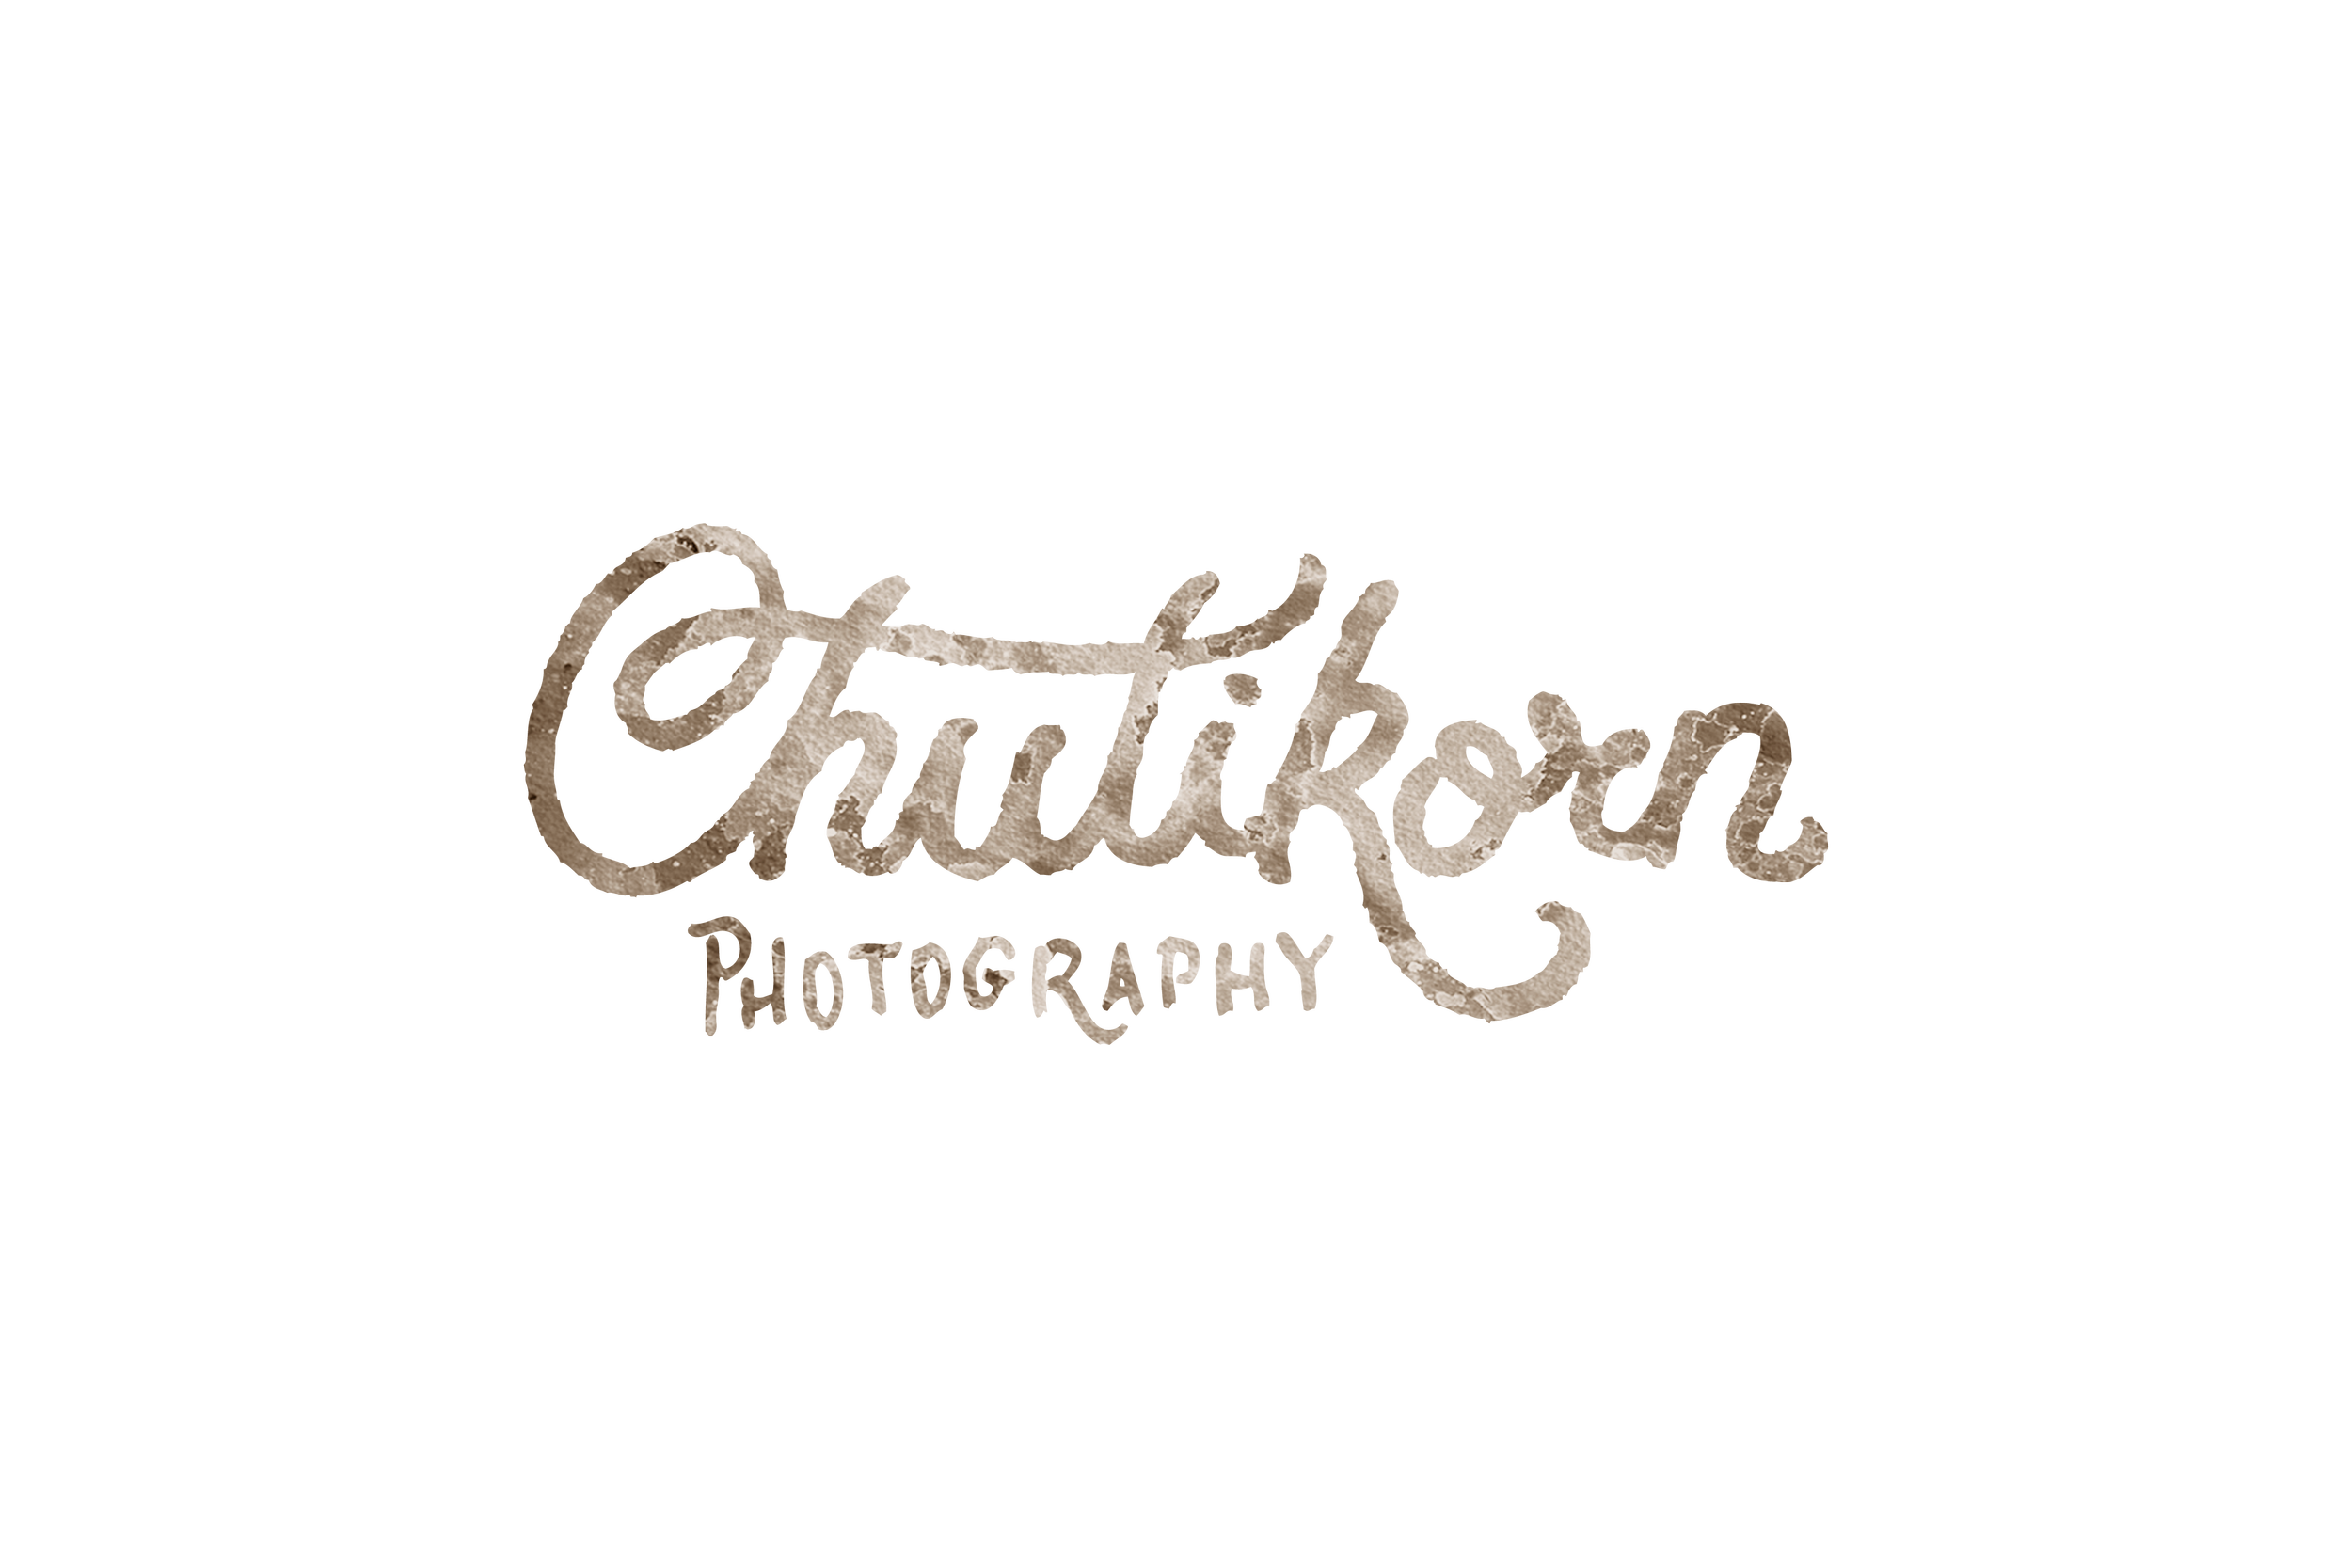 Chutikorn Photography